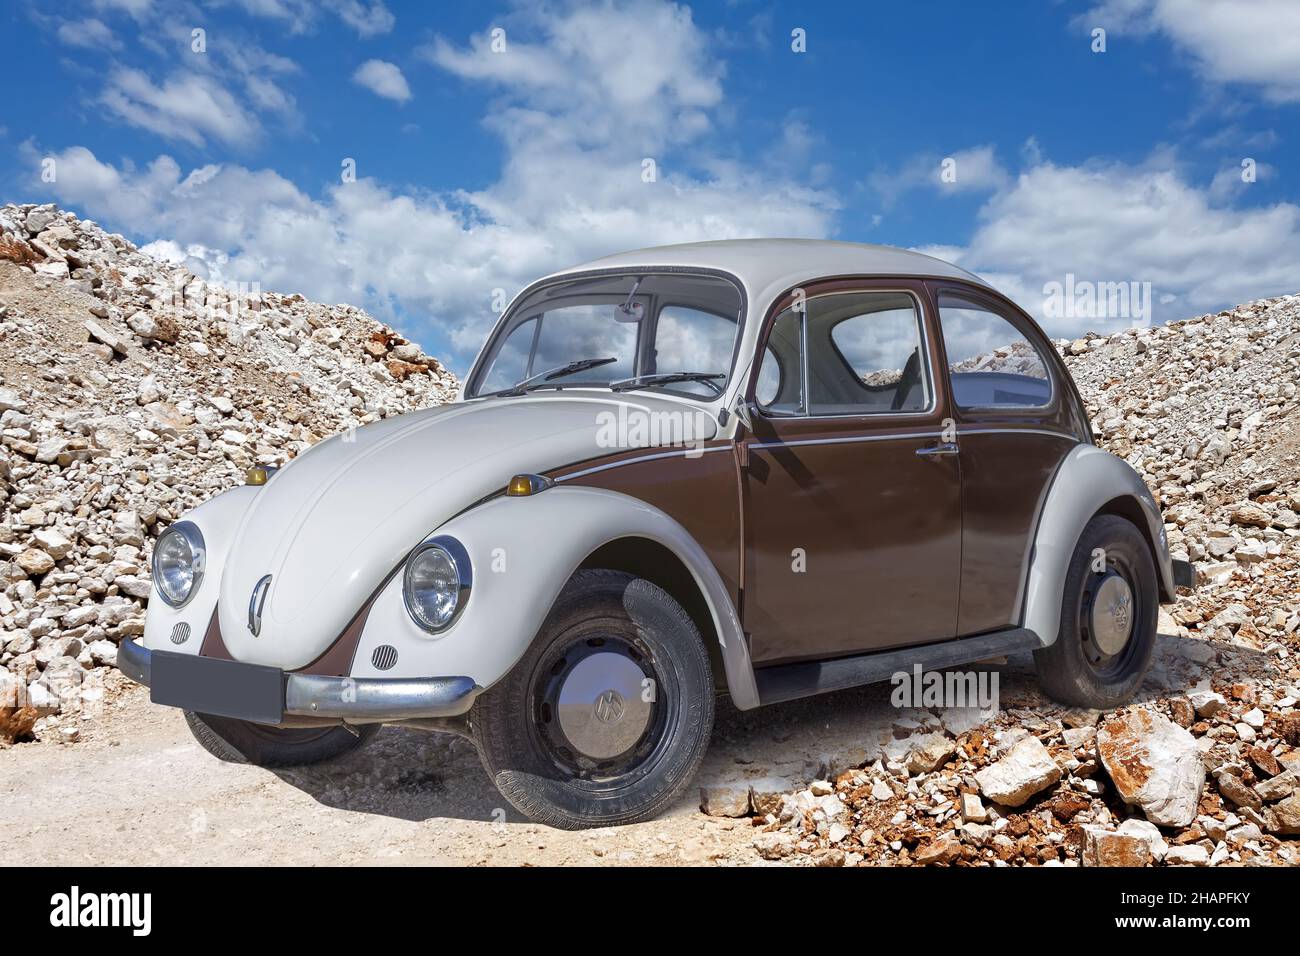 PULA, CROACIA - 25 DE JUNIO de 2015: VW escarabajo viejo-timer coche estacionado en el paso estrecho de piedra en Pula, Croacia Foto de stock